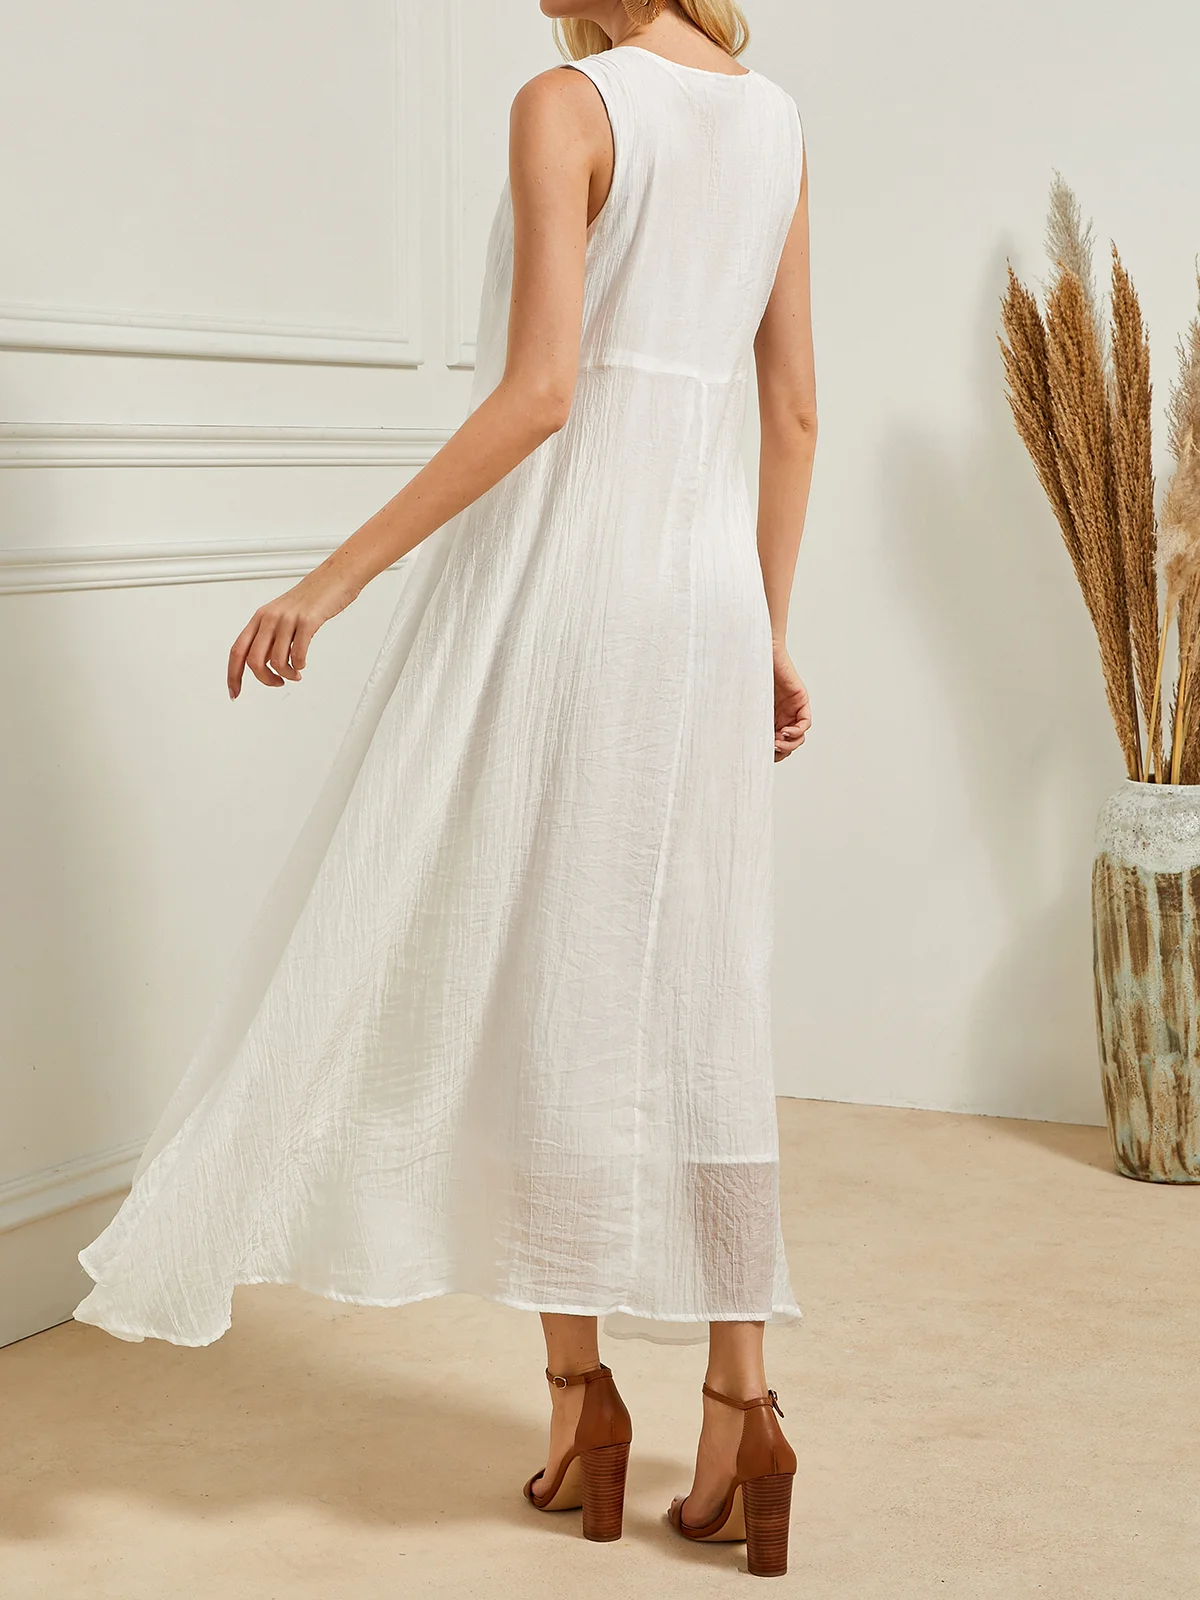 Damen Leinenkleid Weiß Sommerkleid Lang Tanktop Kleid